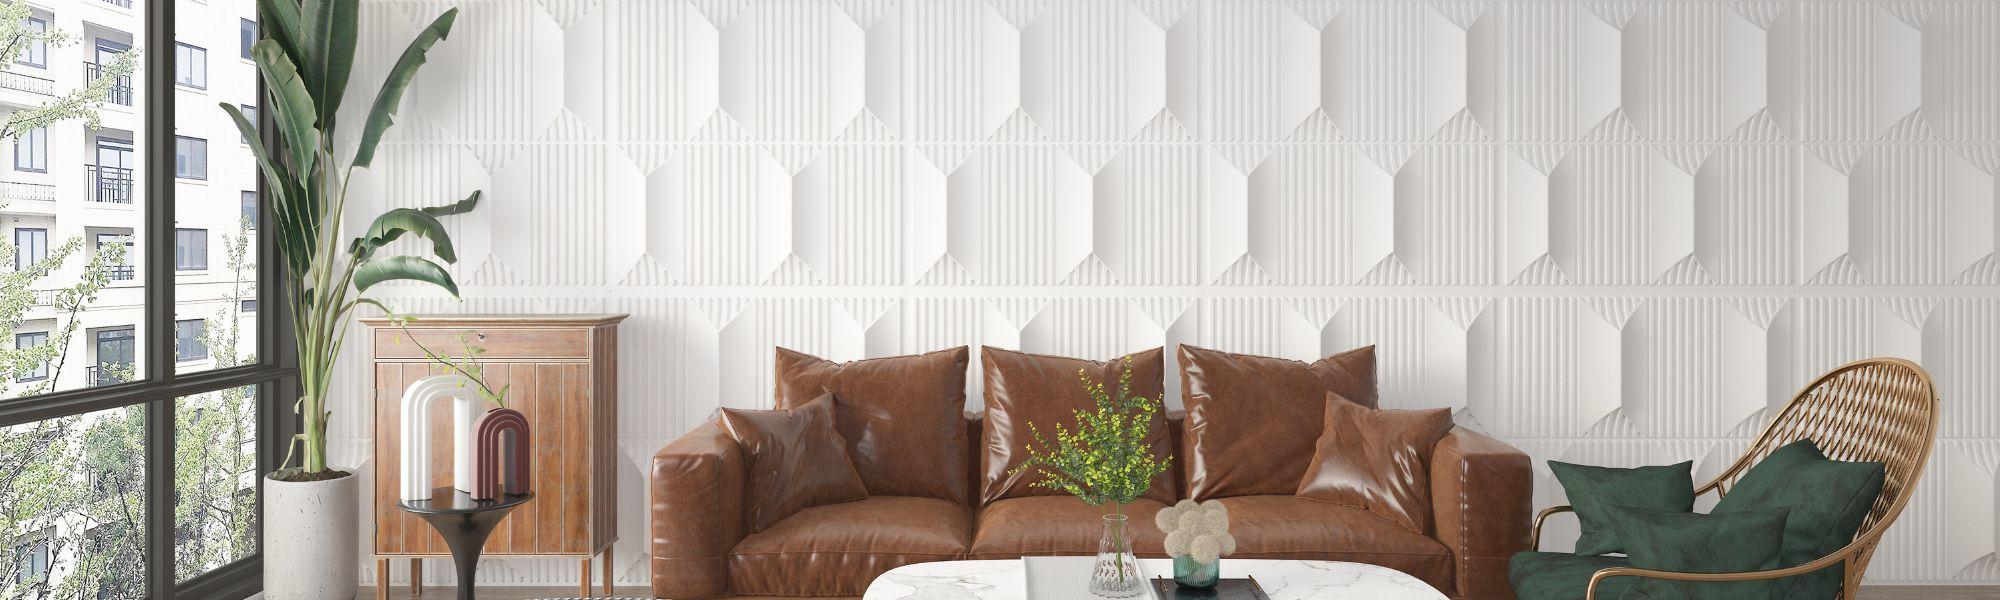 PVC 3D Wall Panels